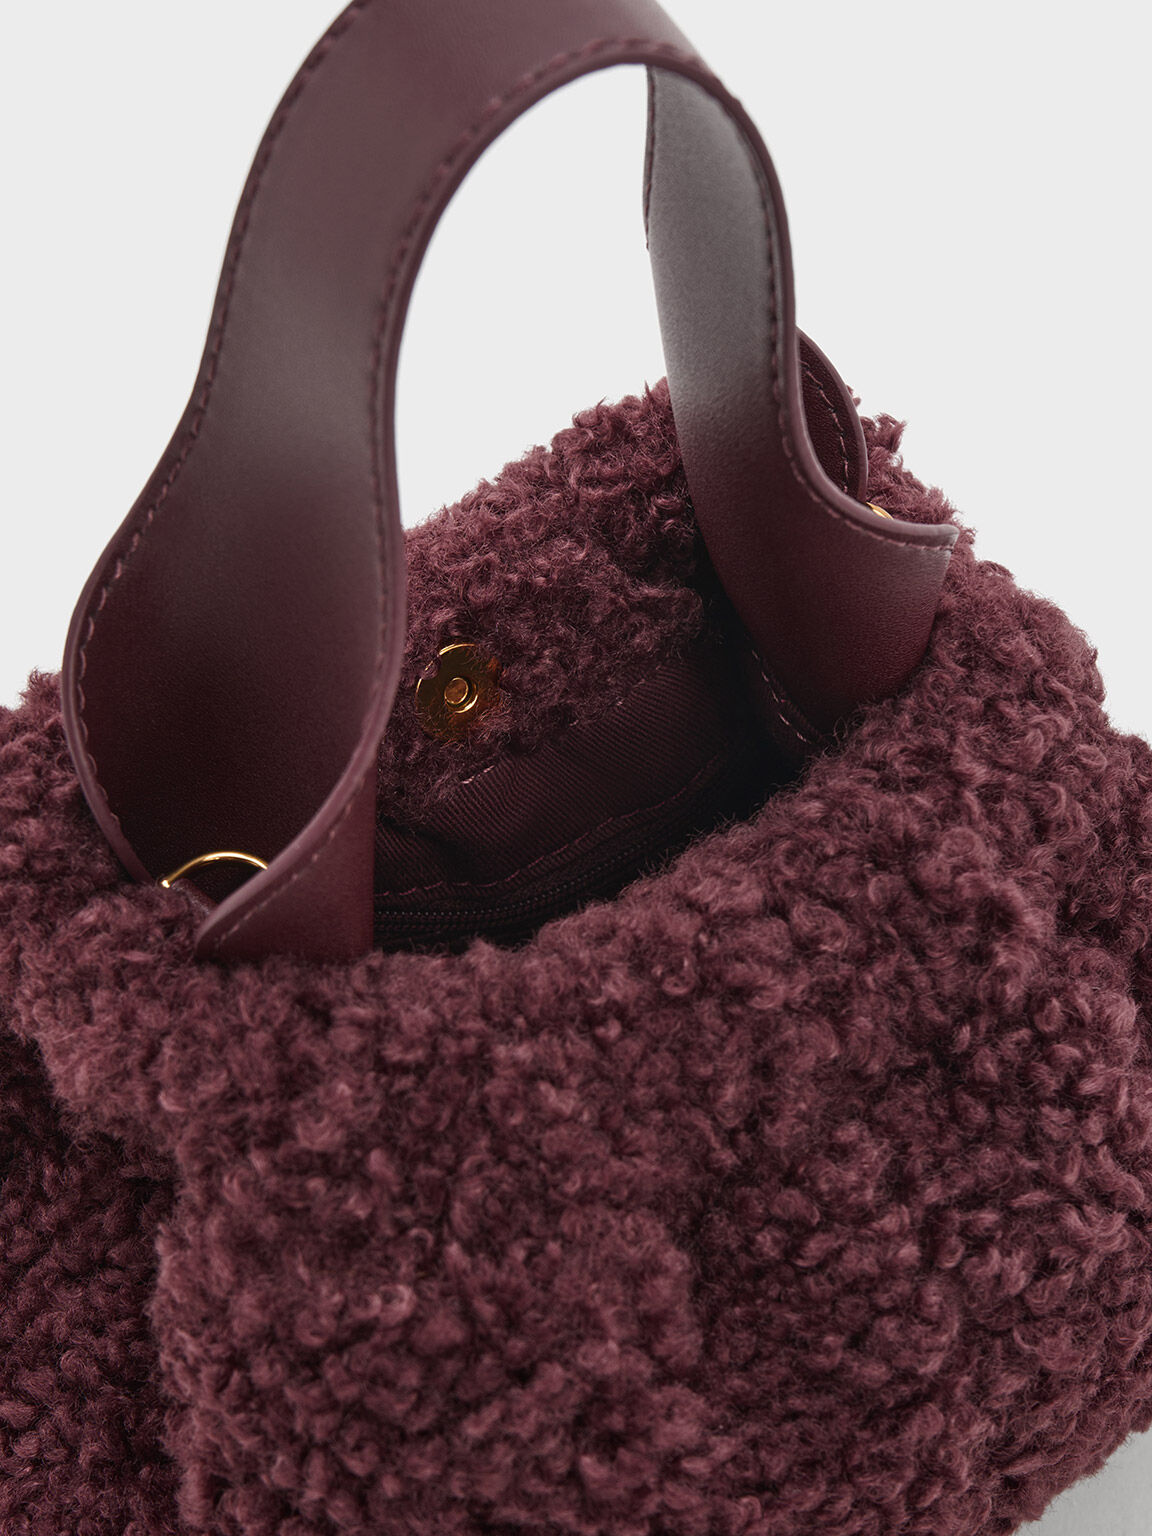 Valgut & Bag  Diseño y producción de bolsos de lujo y accesorios únicos